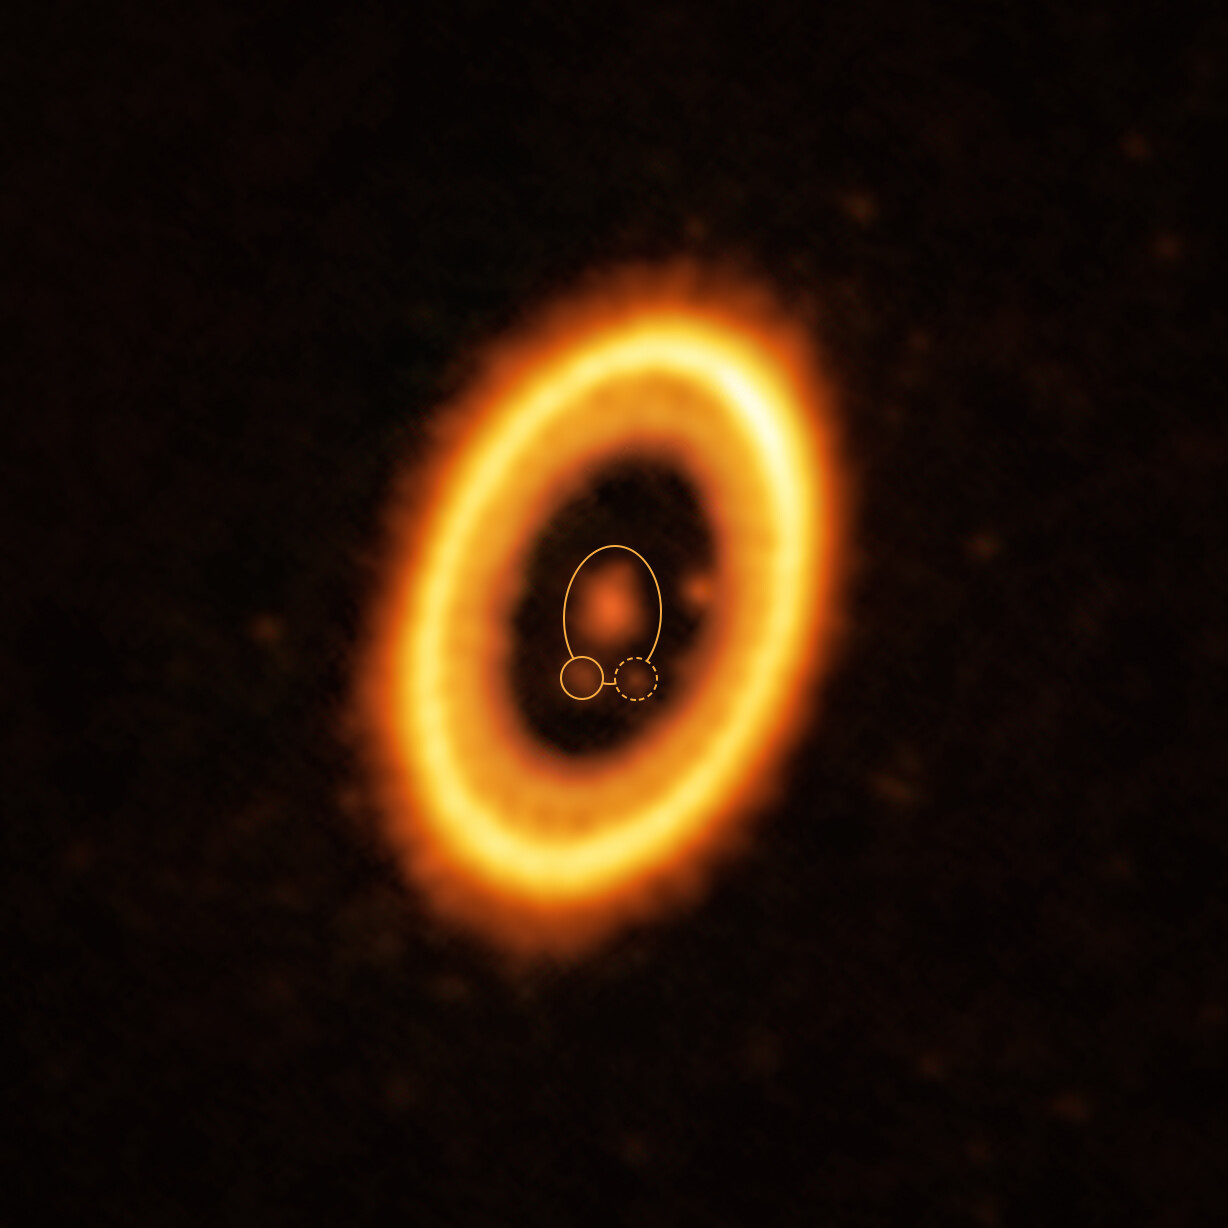 Esta imagen, tomada con el Atacama Large Millimeter/submillimeter Array (ALMA), del cual ESO es socio, muestra el joven sistema planetario PDS 70, ubicado a casi 400 años luz de la Tierra. El sistema presenta una estrella en su centro, alrededor de la cual orbita el planeta PDS 70 b (resaltado con un círculo amarillo sólido). En la misma órbita que PDS 70b, indicada por una elipse amarilla sólida, los astrónomos han detectado una nube de escombros (rodeada por una línea punteada amarilla) que podrían ser los componentes básicos de un nuevo planeta o los restos de uno ya formado. La estructura en forma de anillo que domina la imagen es un disco circunestelar de material, a partir del cual se están formando planetas. De hecho, hay otro planeta en este sistema: el PDS 70c, que se ubica a las 3 en punto justo al lado del borde interior del disco. Crédito: ALMA (ESO/NAOJ/NRAO) /Balsalobre-Ruza et al.